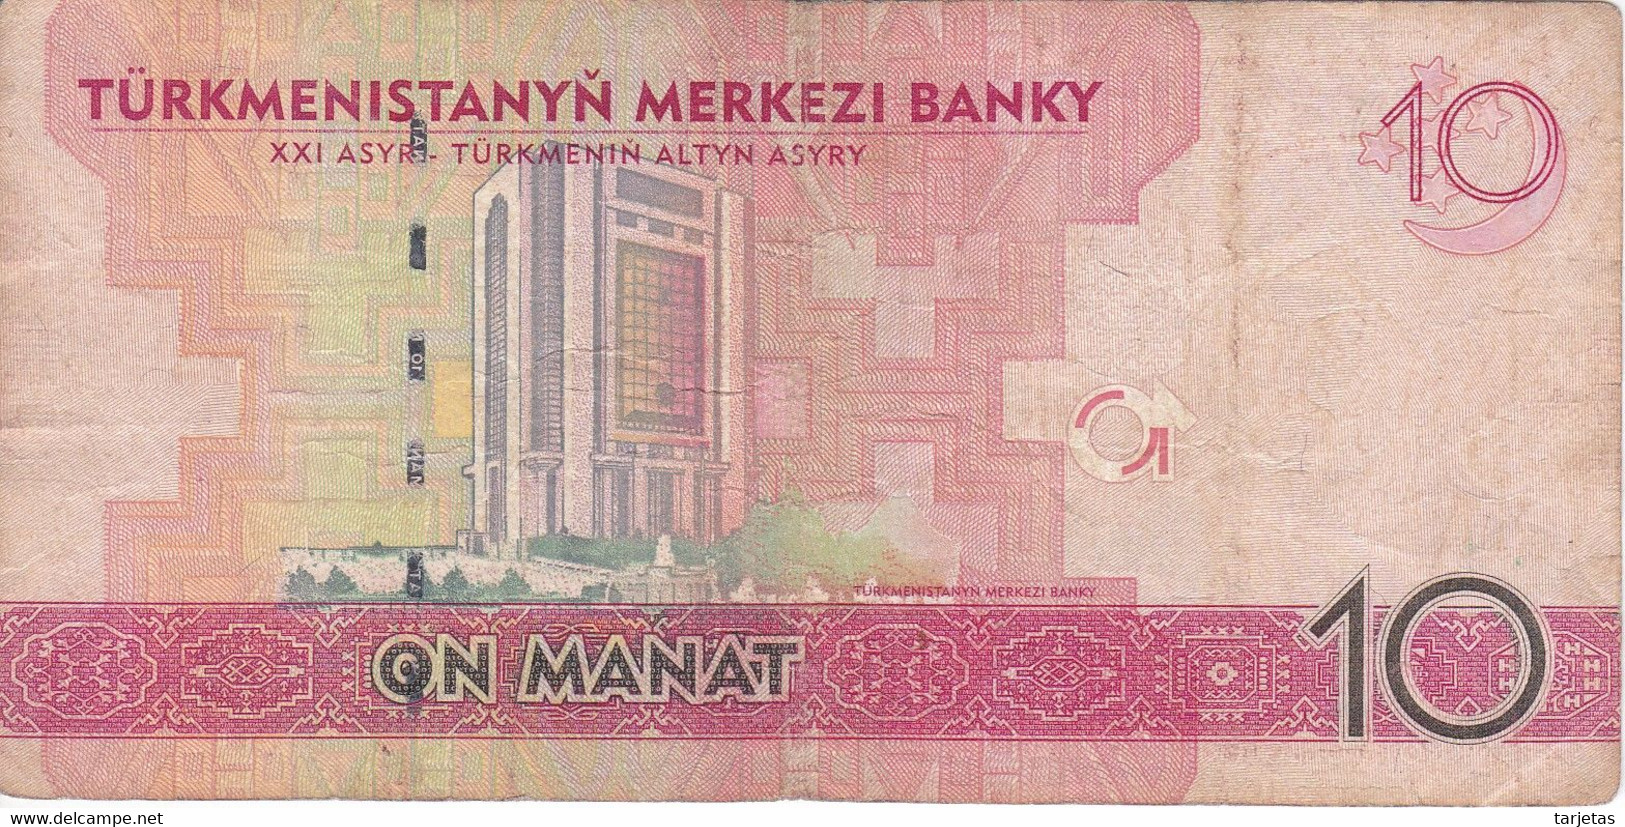 BILLETE DE TURKMENISTAN DE 10 MANAT DEL AÑO 2009 (BANKNOTE) - Turkmenistan